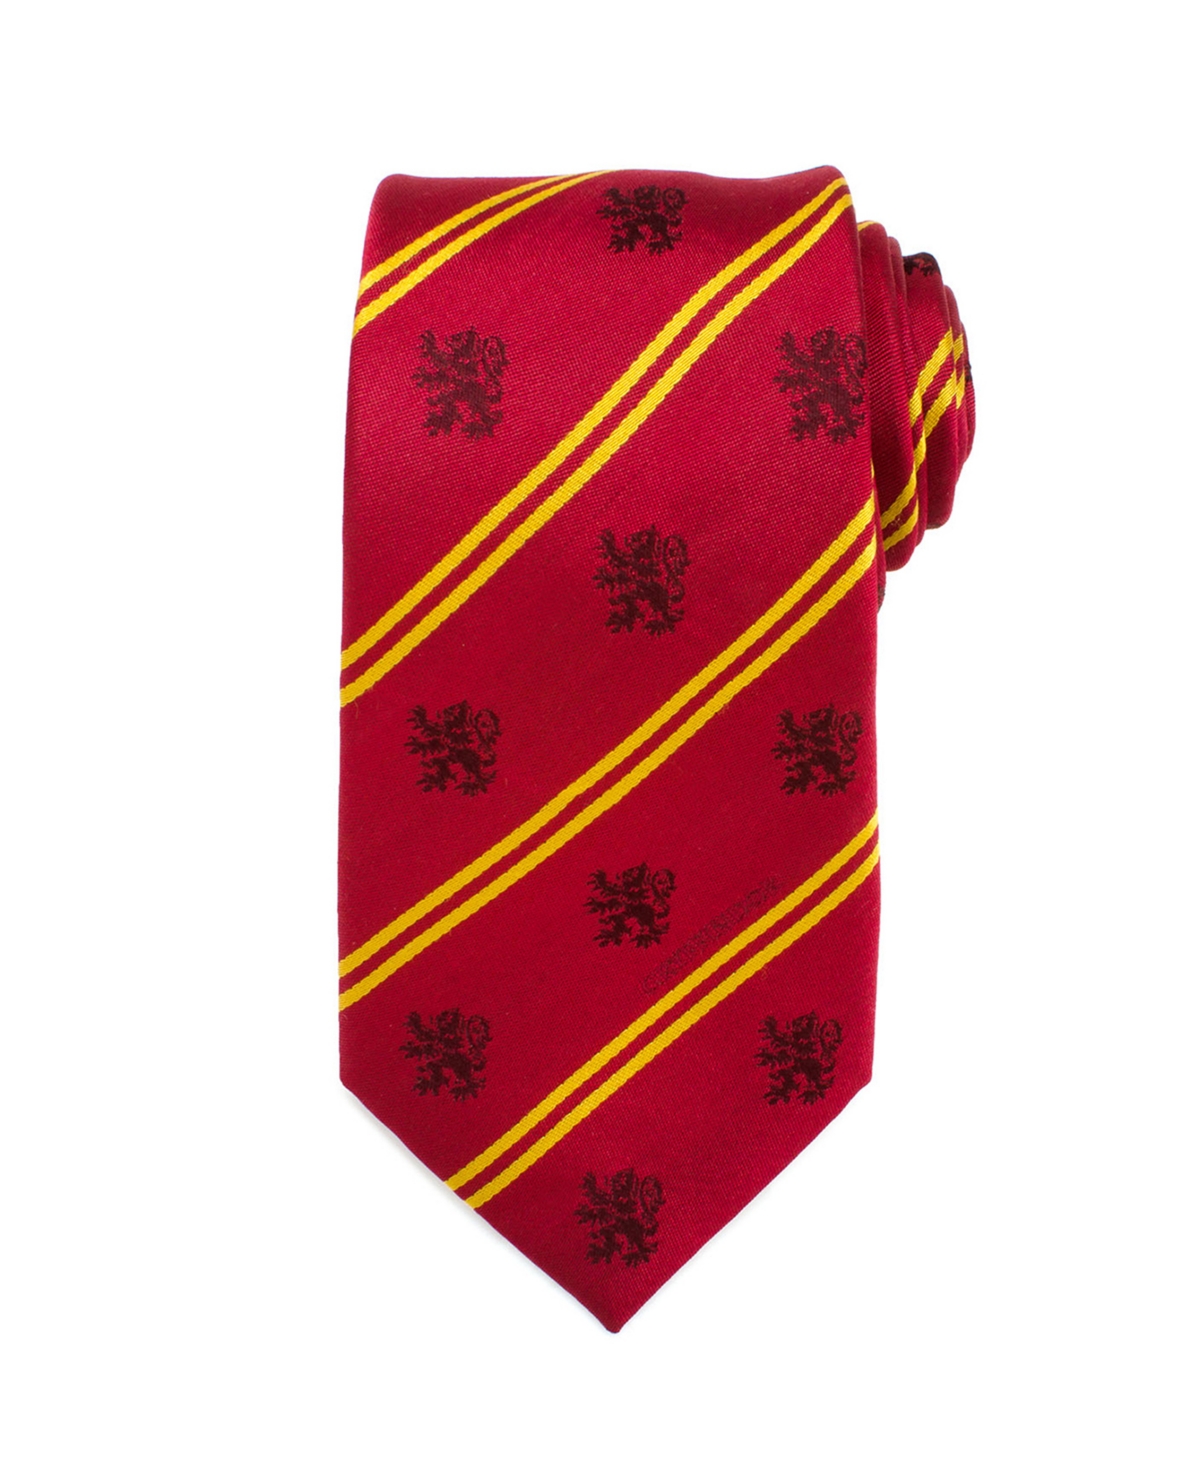 Gryffindor Pinstripe Men's Tie - Red